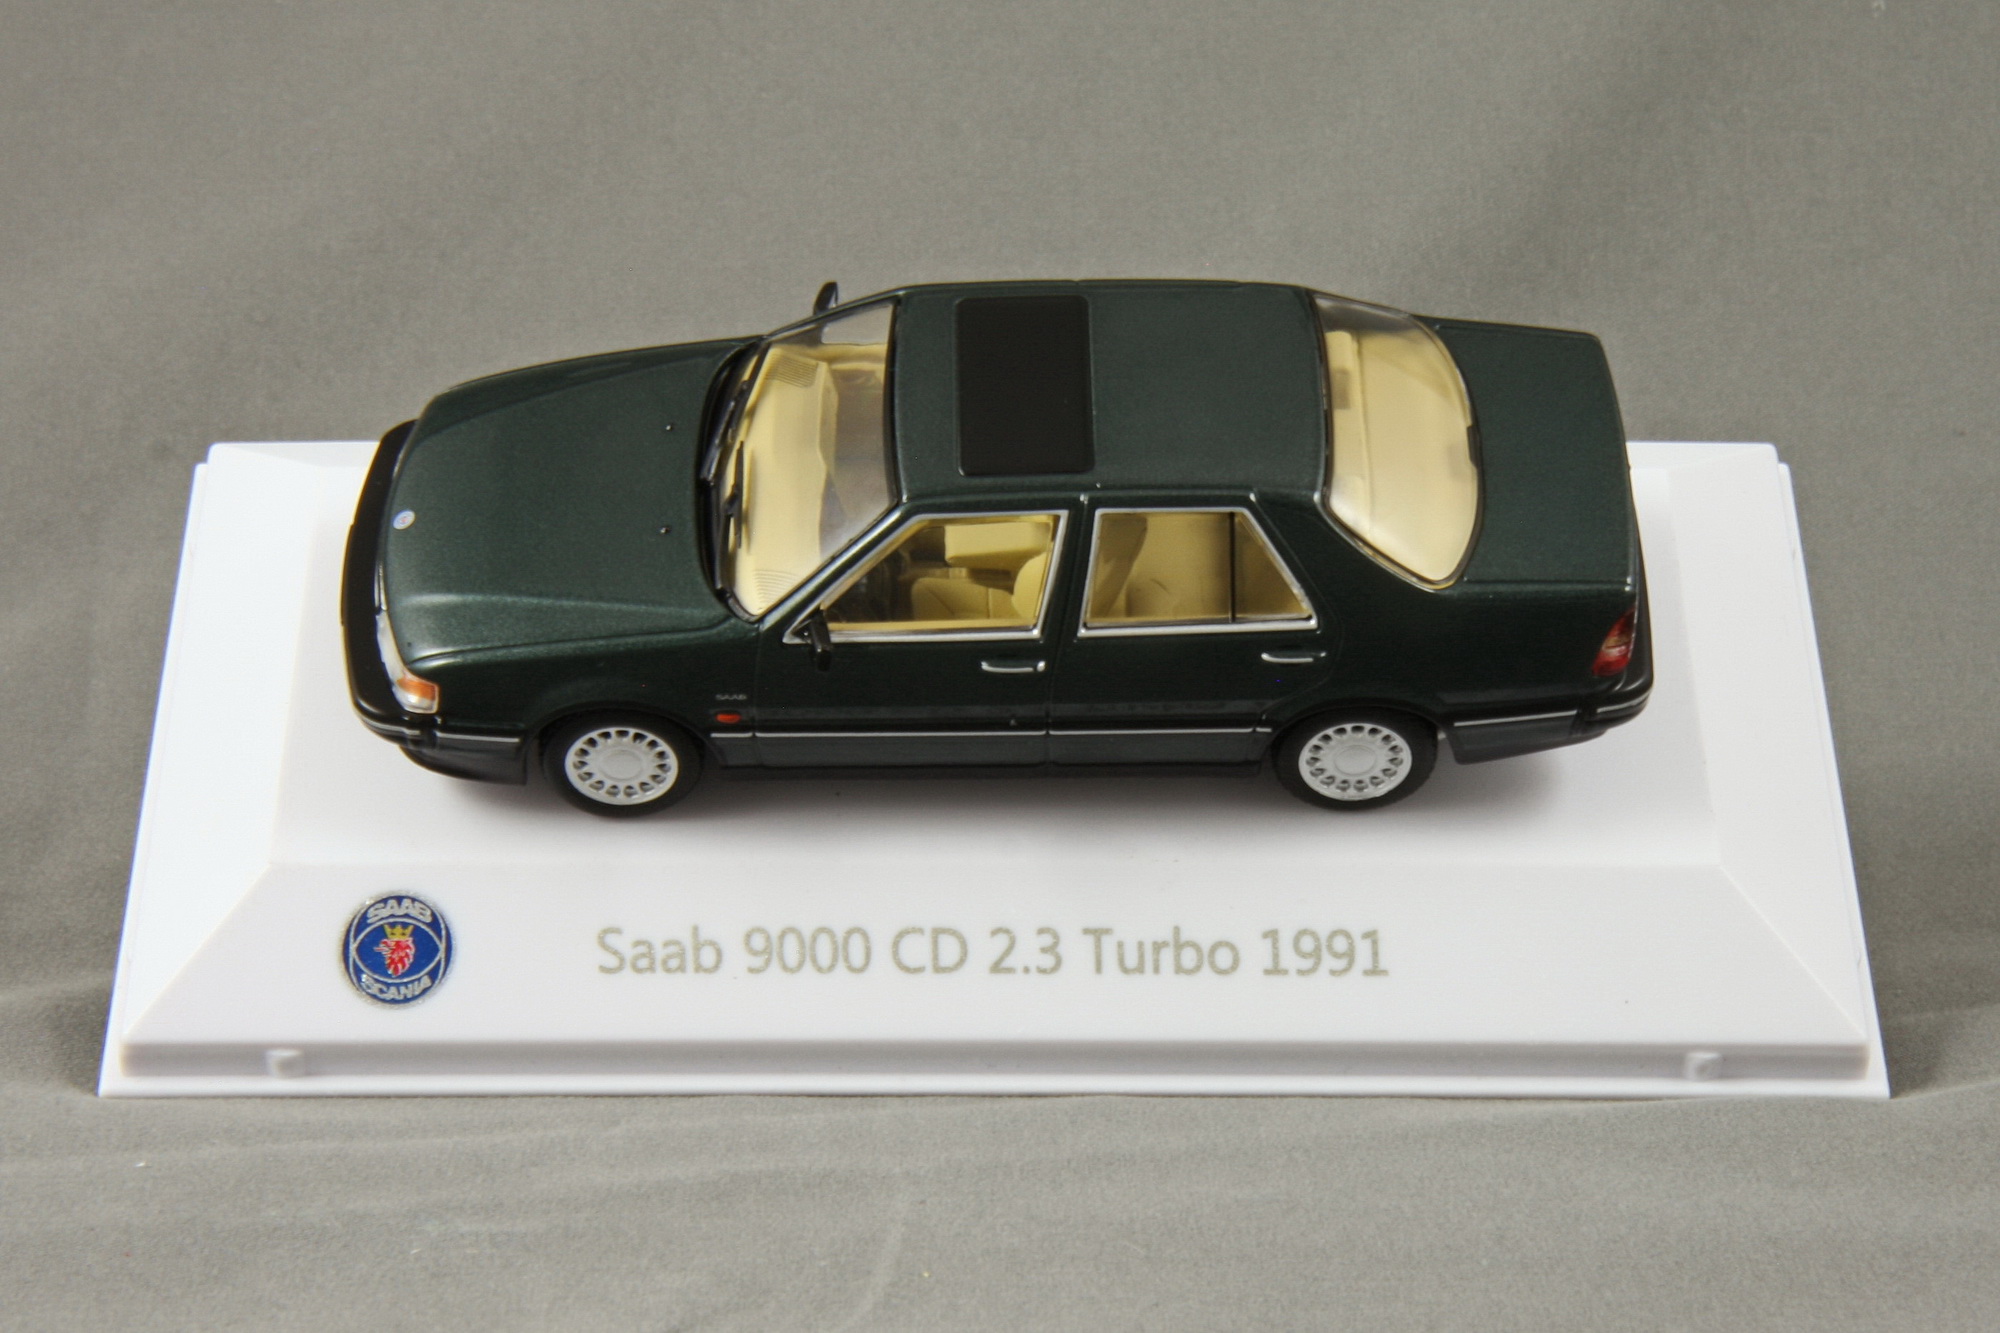 9000 - 1991 CD 2,3 Turbo Bild 8